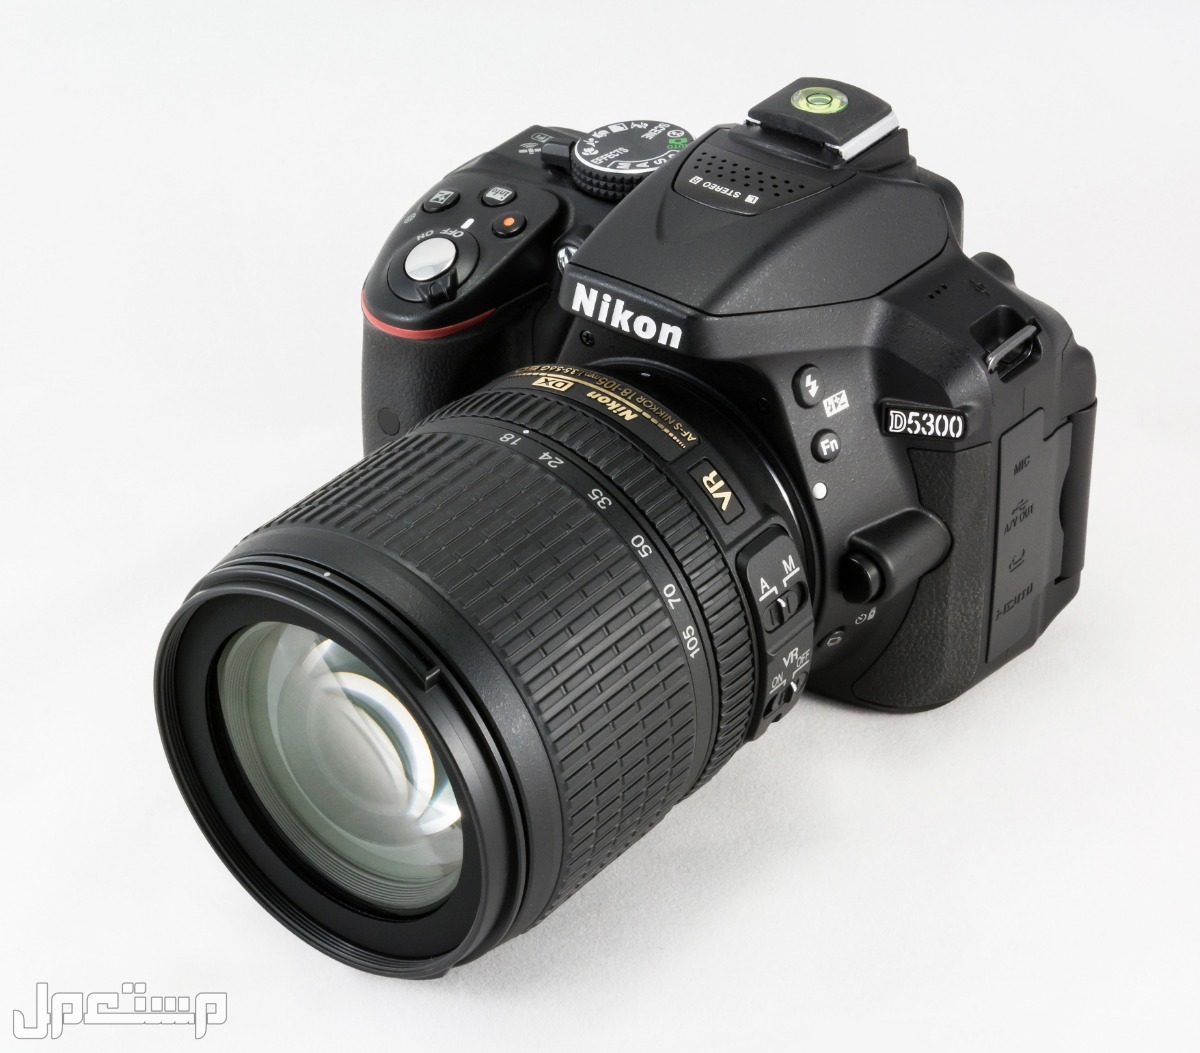 مواصفات ومميزات وأسعار أفضل أنواع كاميرات نيكون للمحترفين في عمان كاميرا Nikon D5300